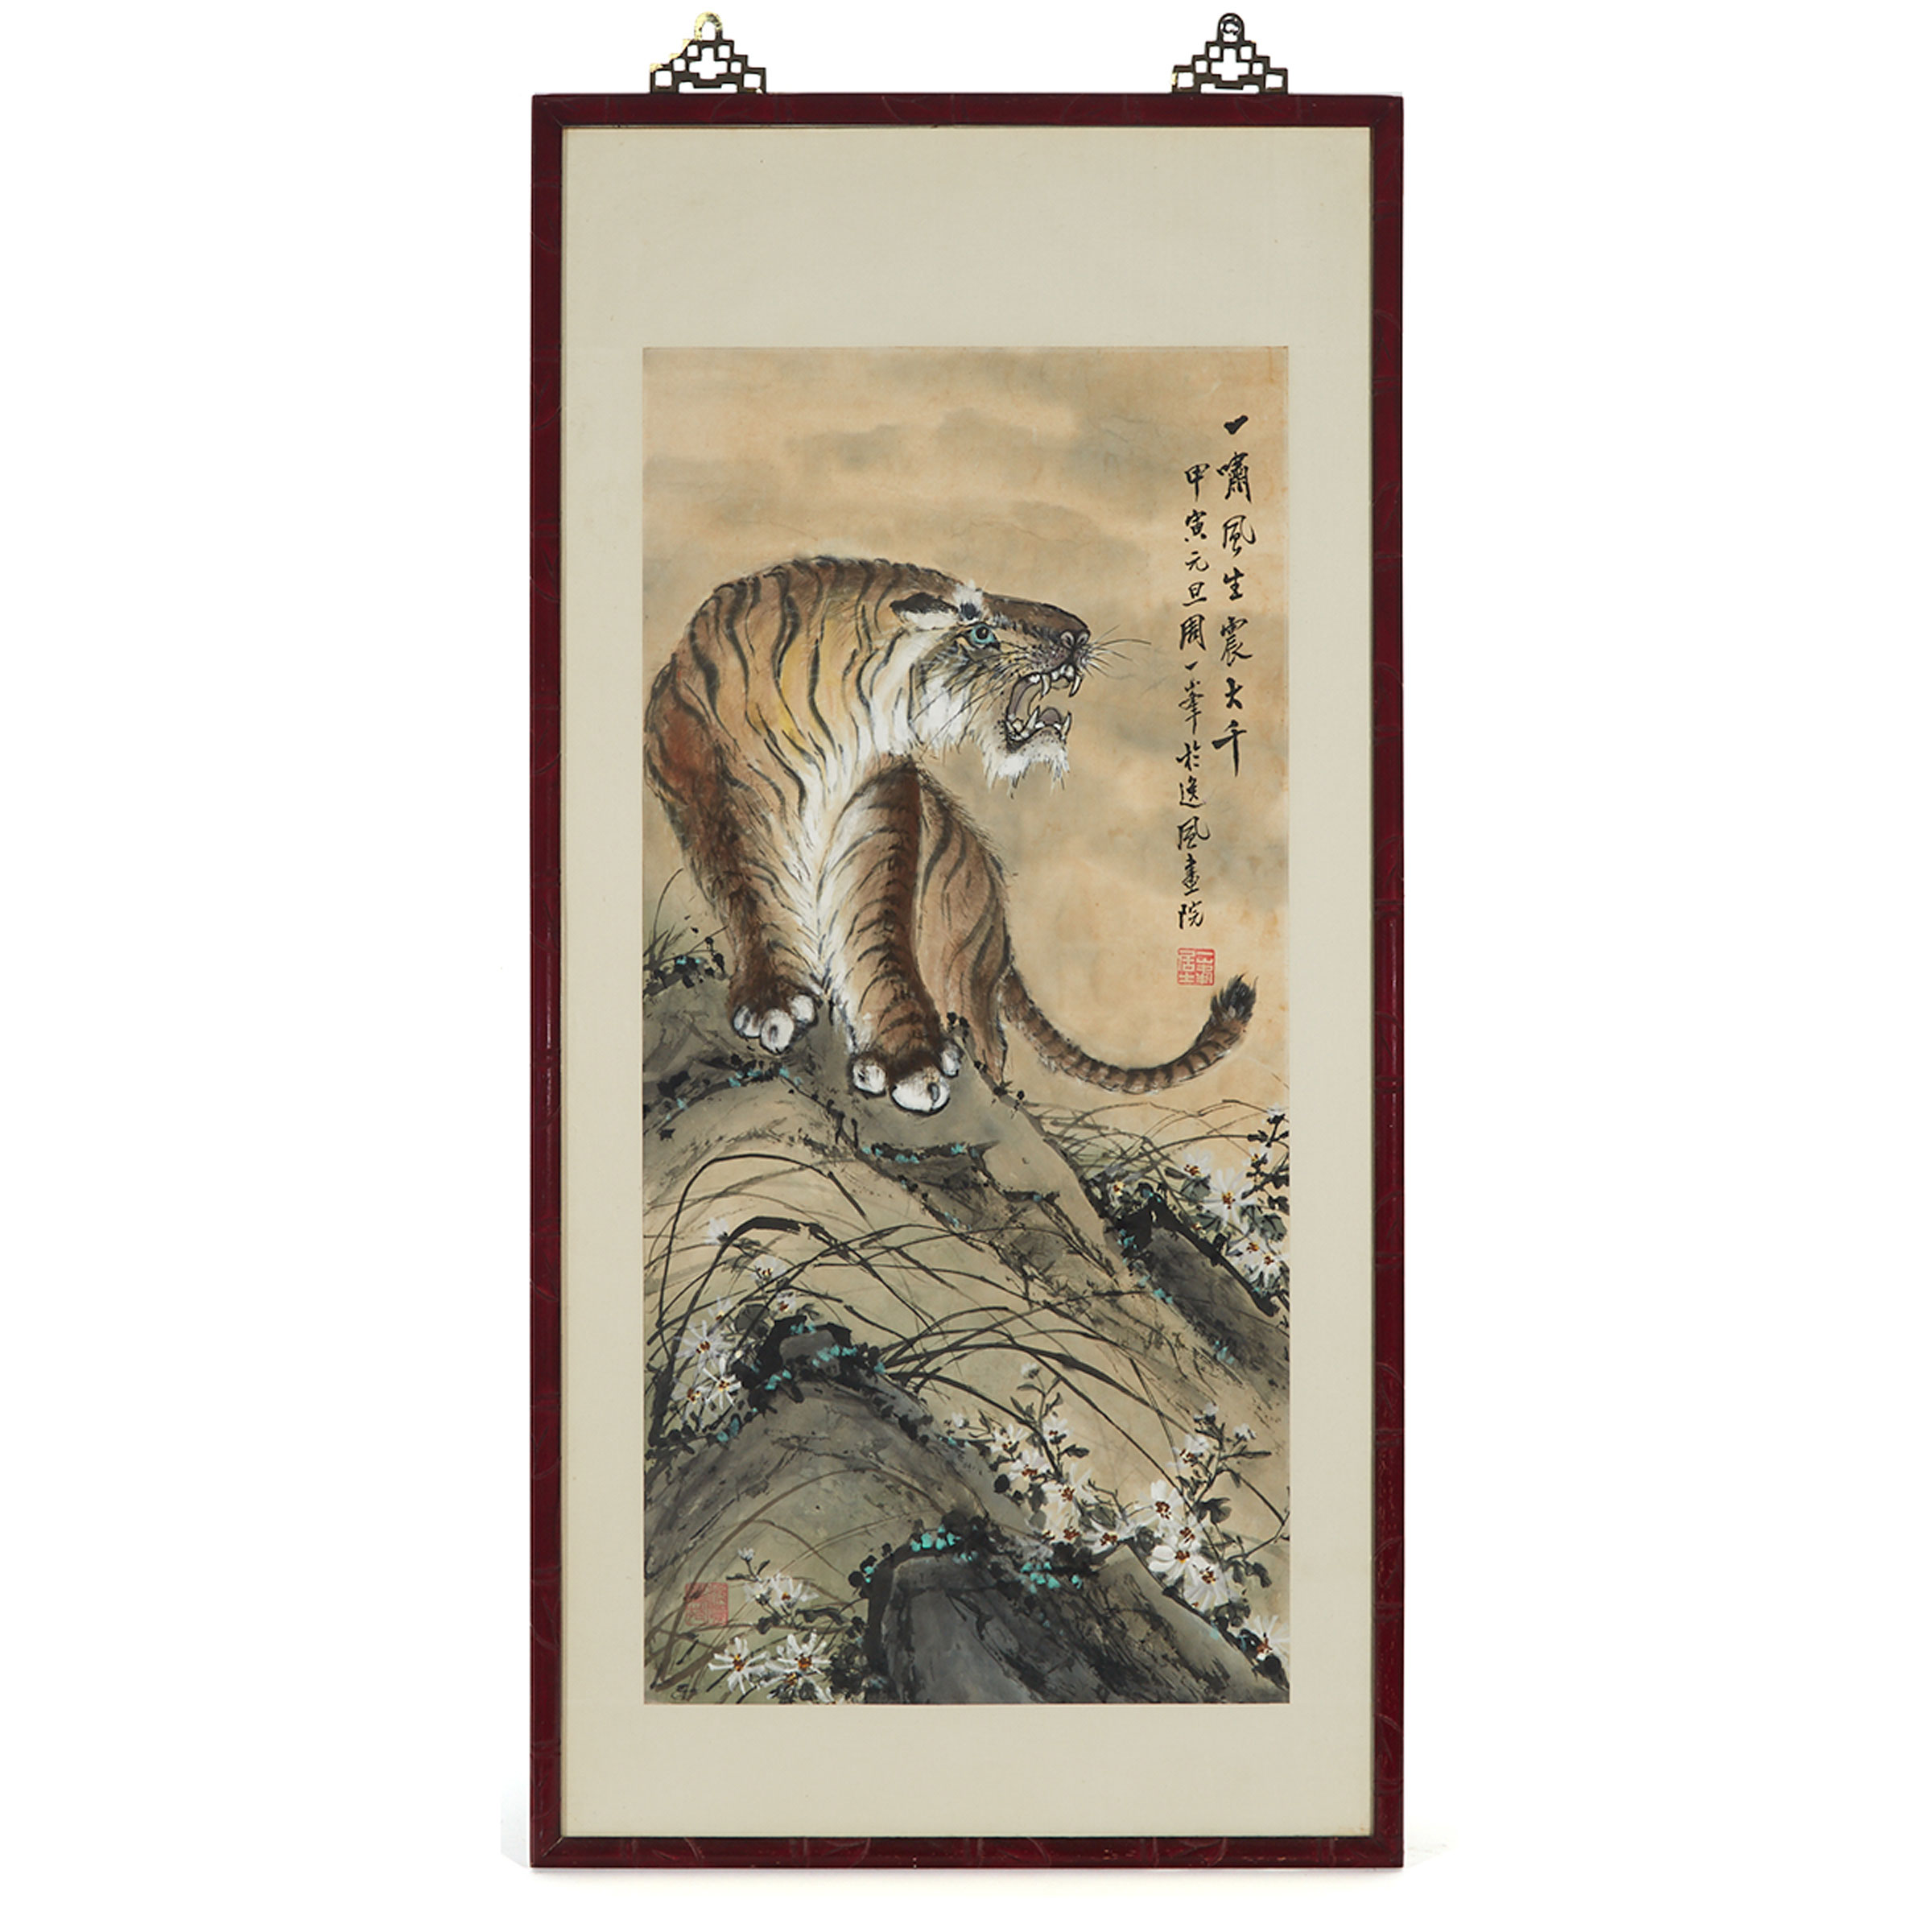 Zhou Yifeng 周一峰 (1890-1982), Roaring Tiger